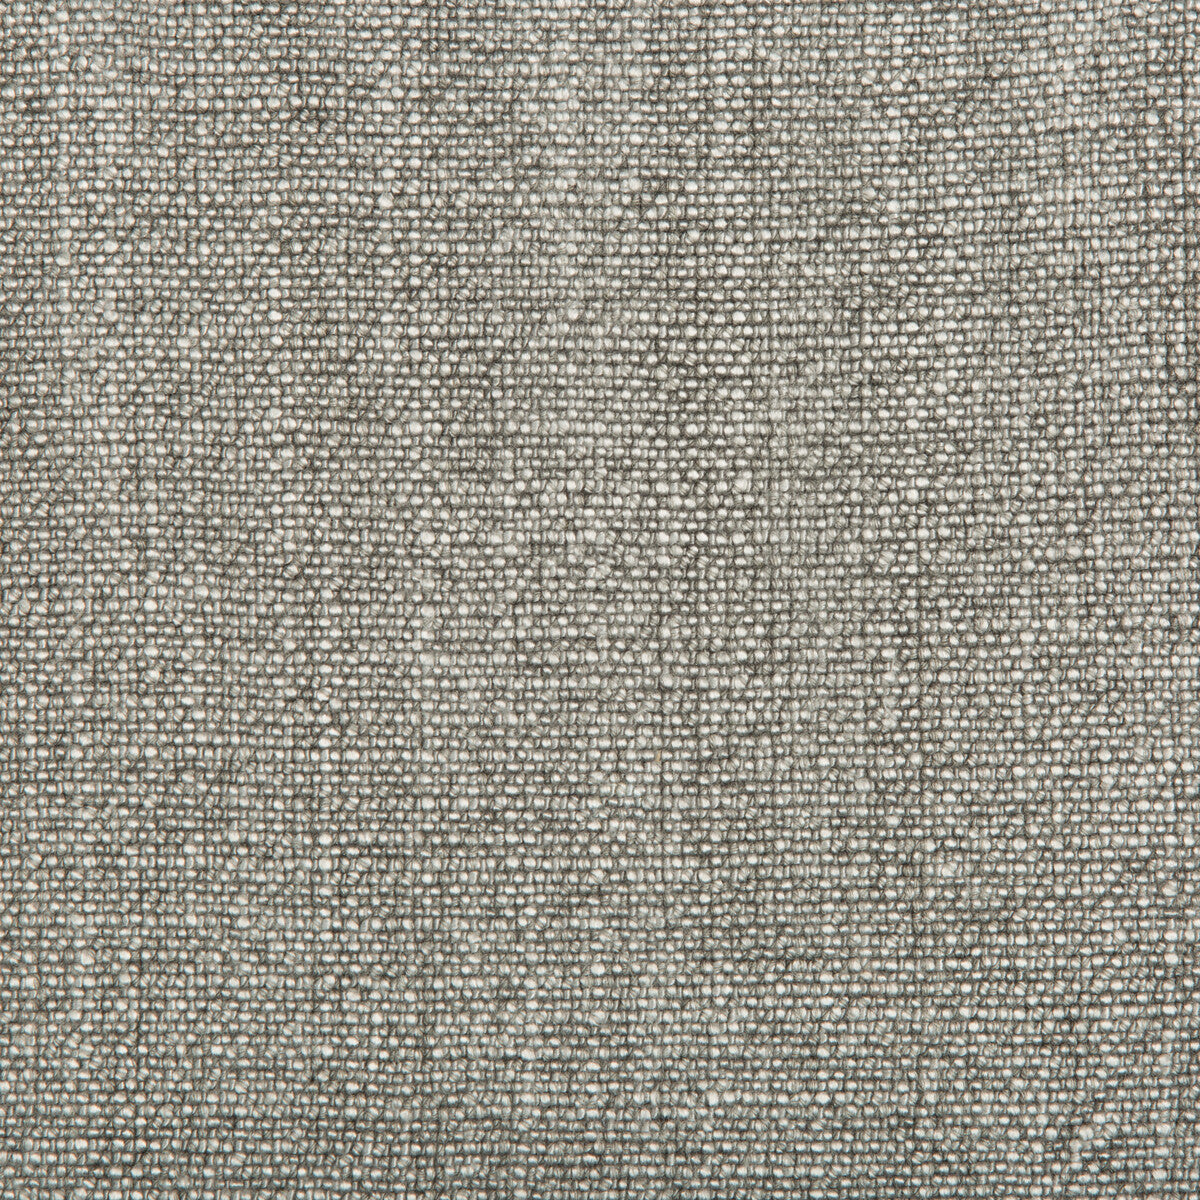 Kravet Basics fabric in 35189-2111 color - pattern 35189.2111.0 - by Kravet Basics